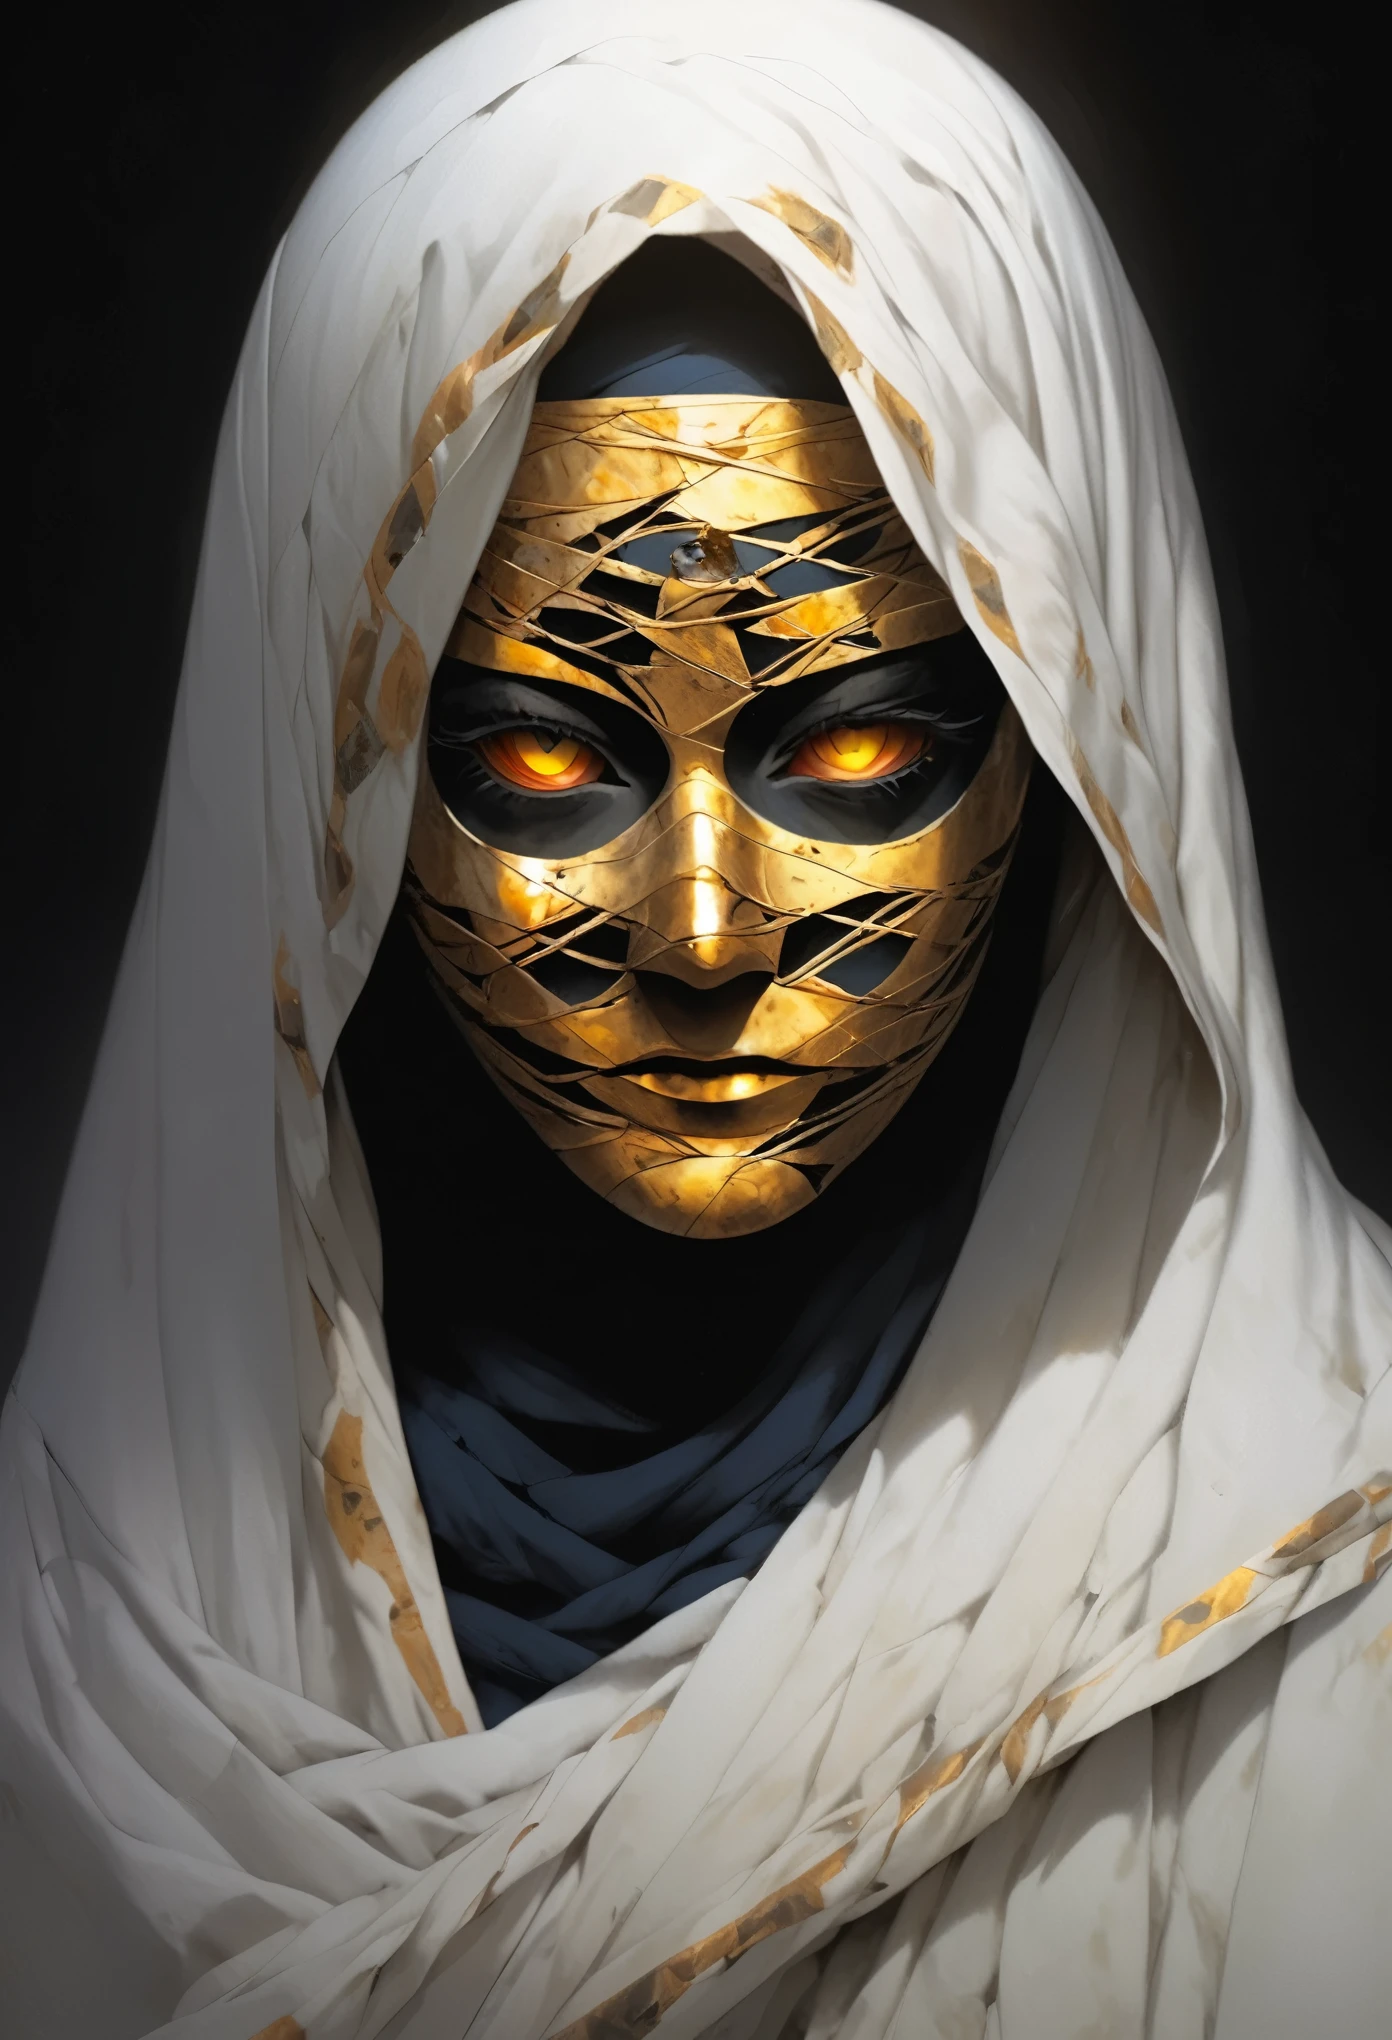 (beste Qualität,highres,ultra-ausführlich:1.2),Nahaufnahme des Gesichts einer Mumie,bedeckt mit Bandagen mit goldenen Hieroglyphen,ausführlich,goldene und leuchtende Augen,lebendige und intensive Farben,dunkle Ringe,realistisch,Grafik-Design,terror